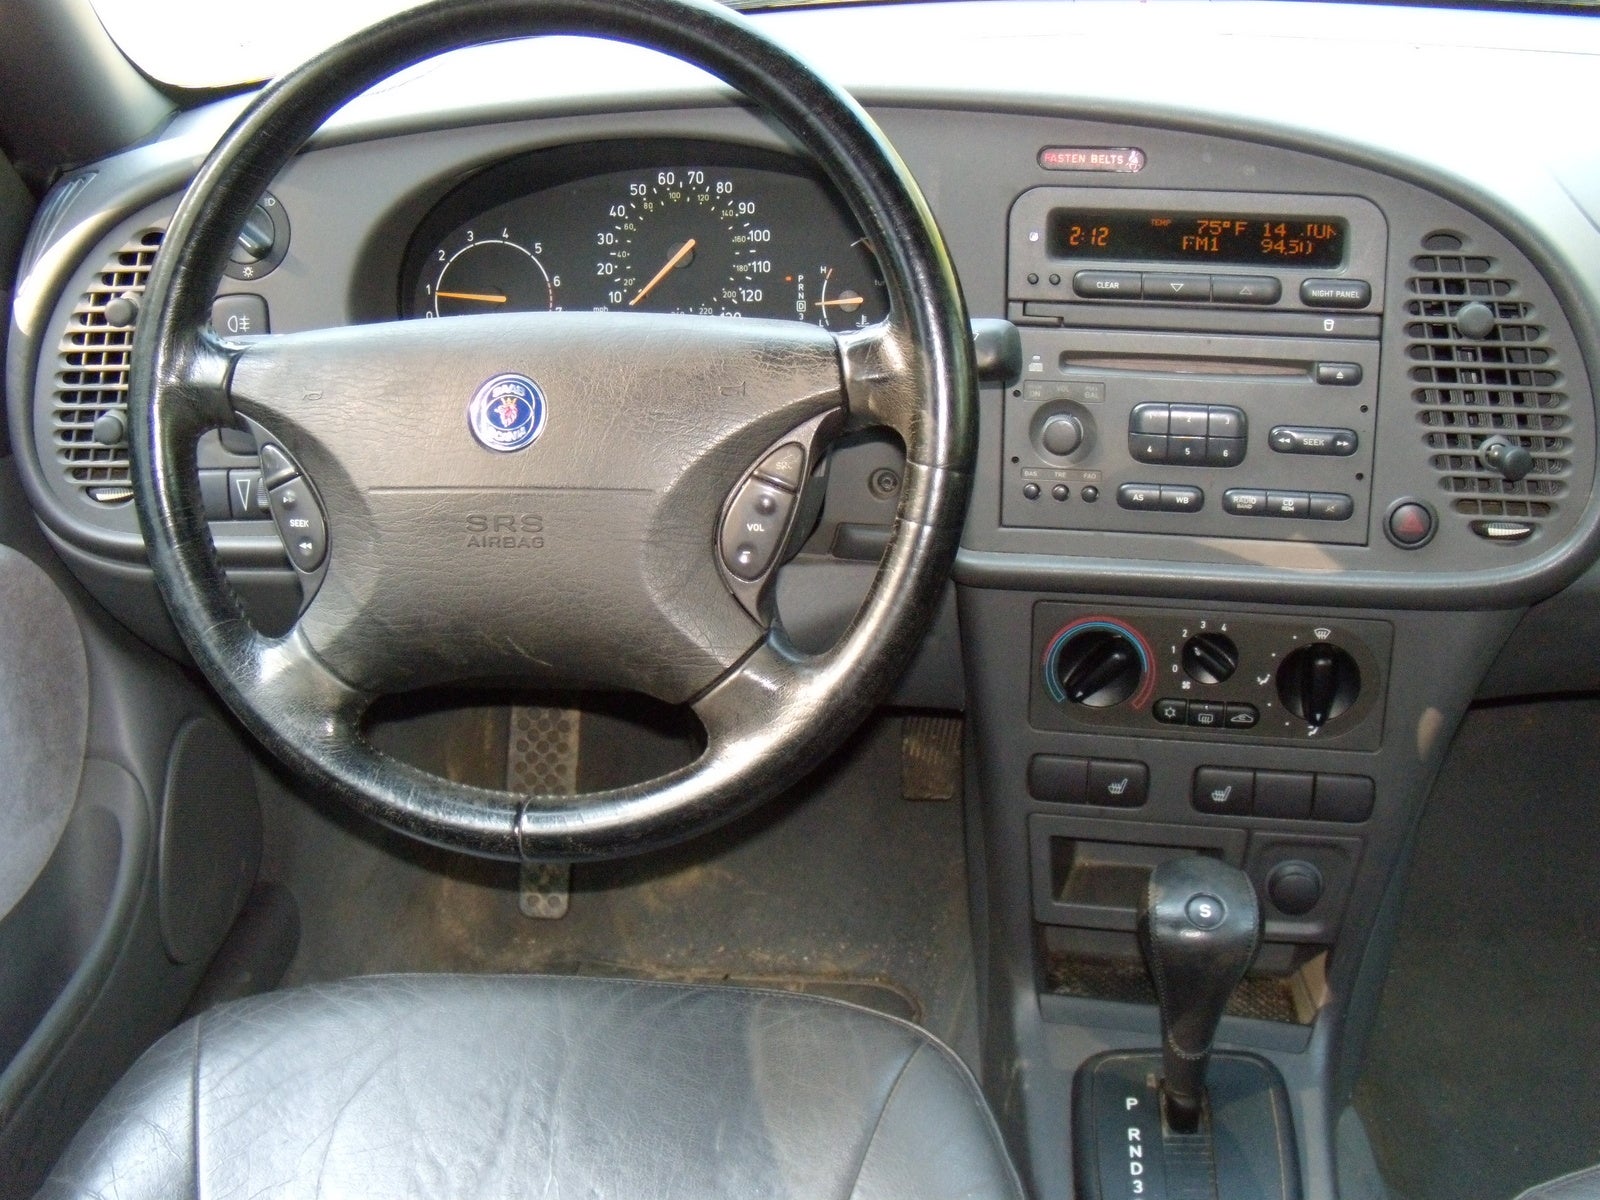 1999 saab 9 3 interior doors handle